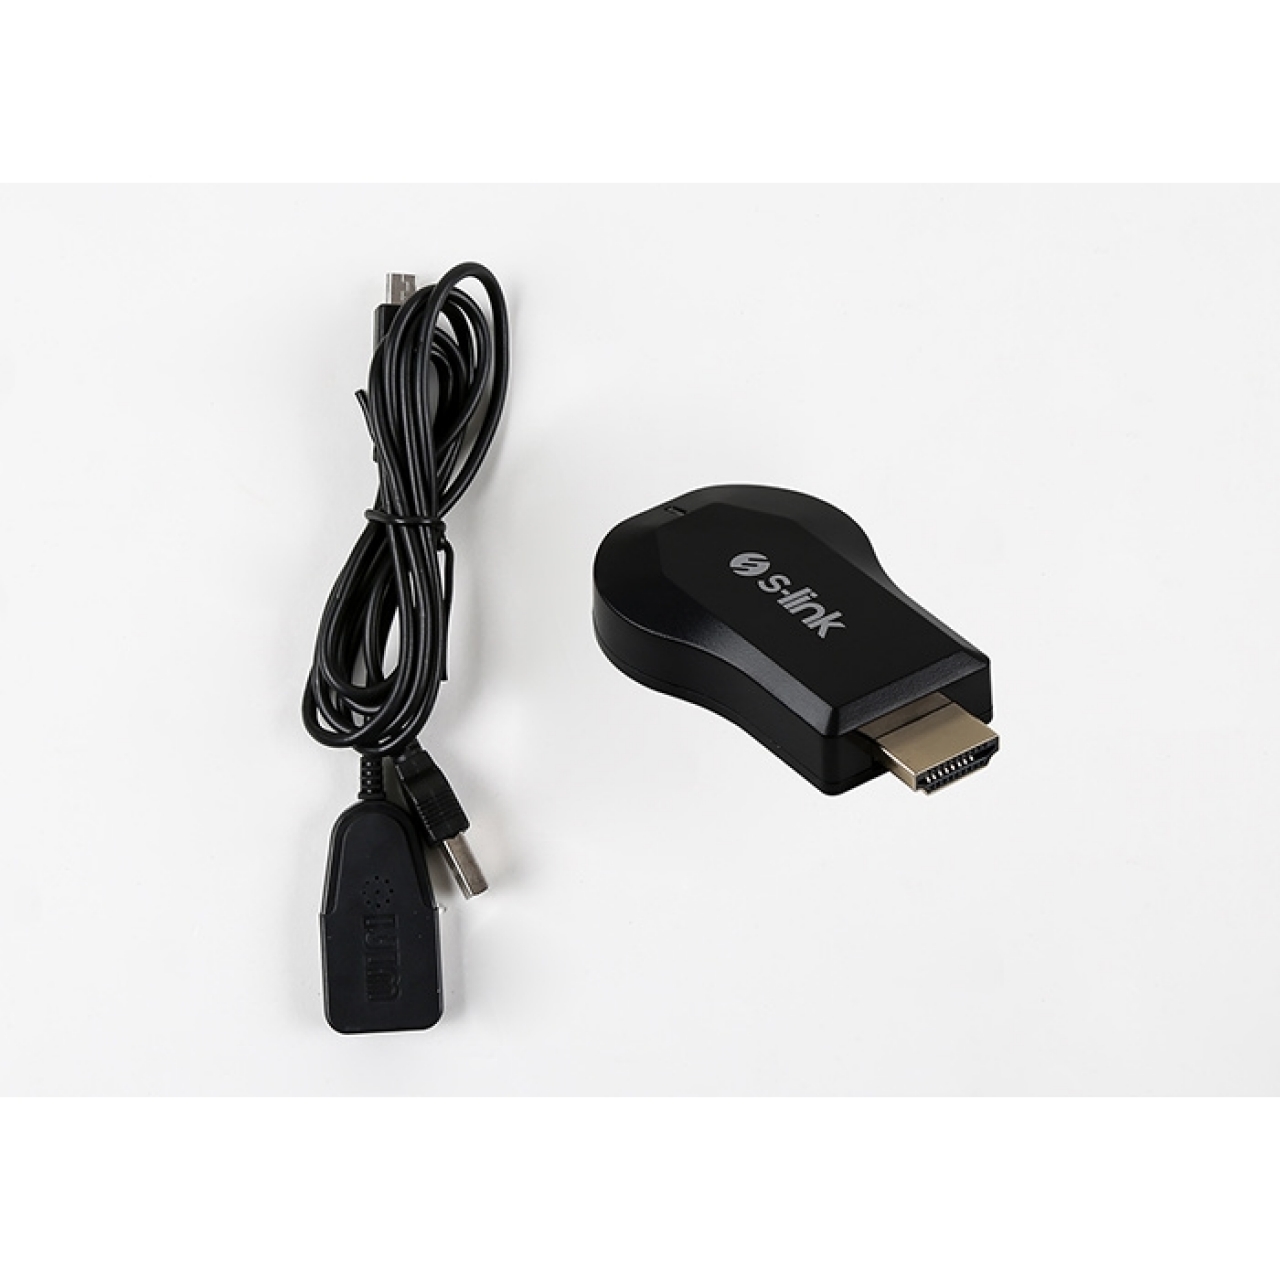 S-link SL-WH25 Kablosuz HDMI Görüntü+Ses Aktarıcı